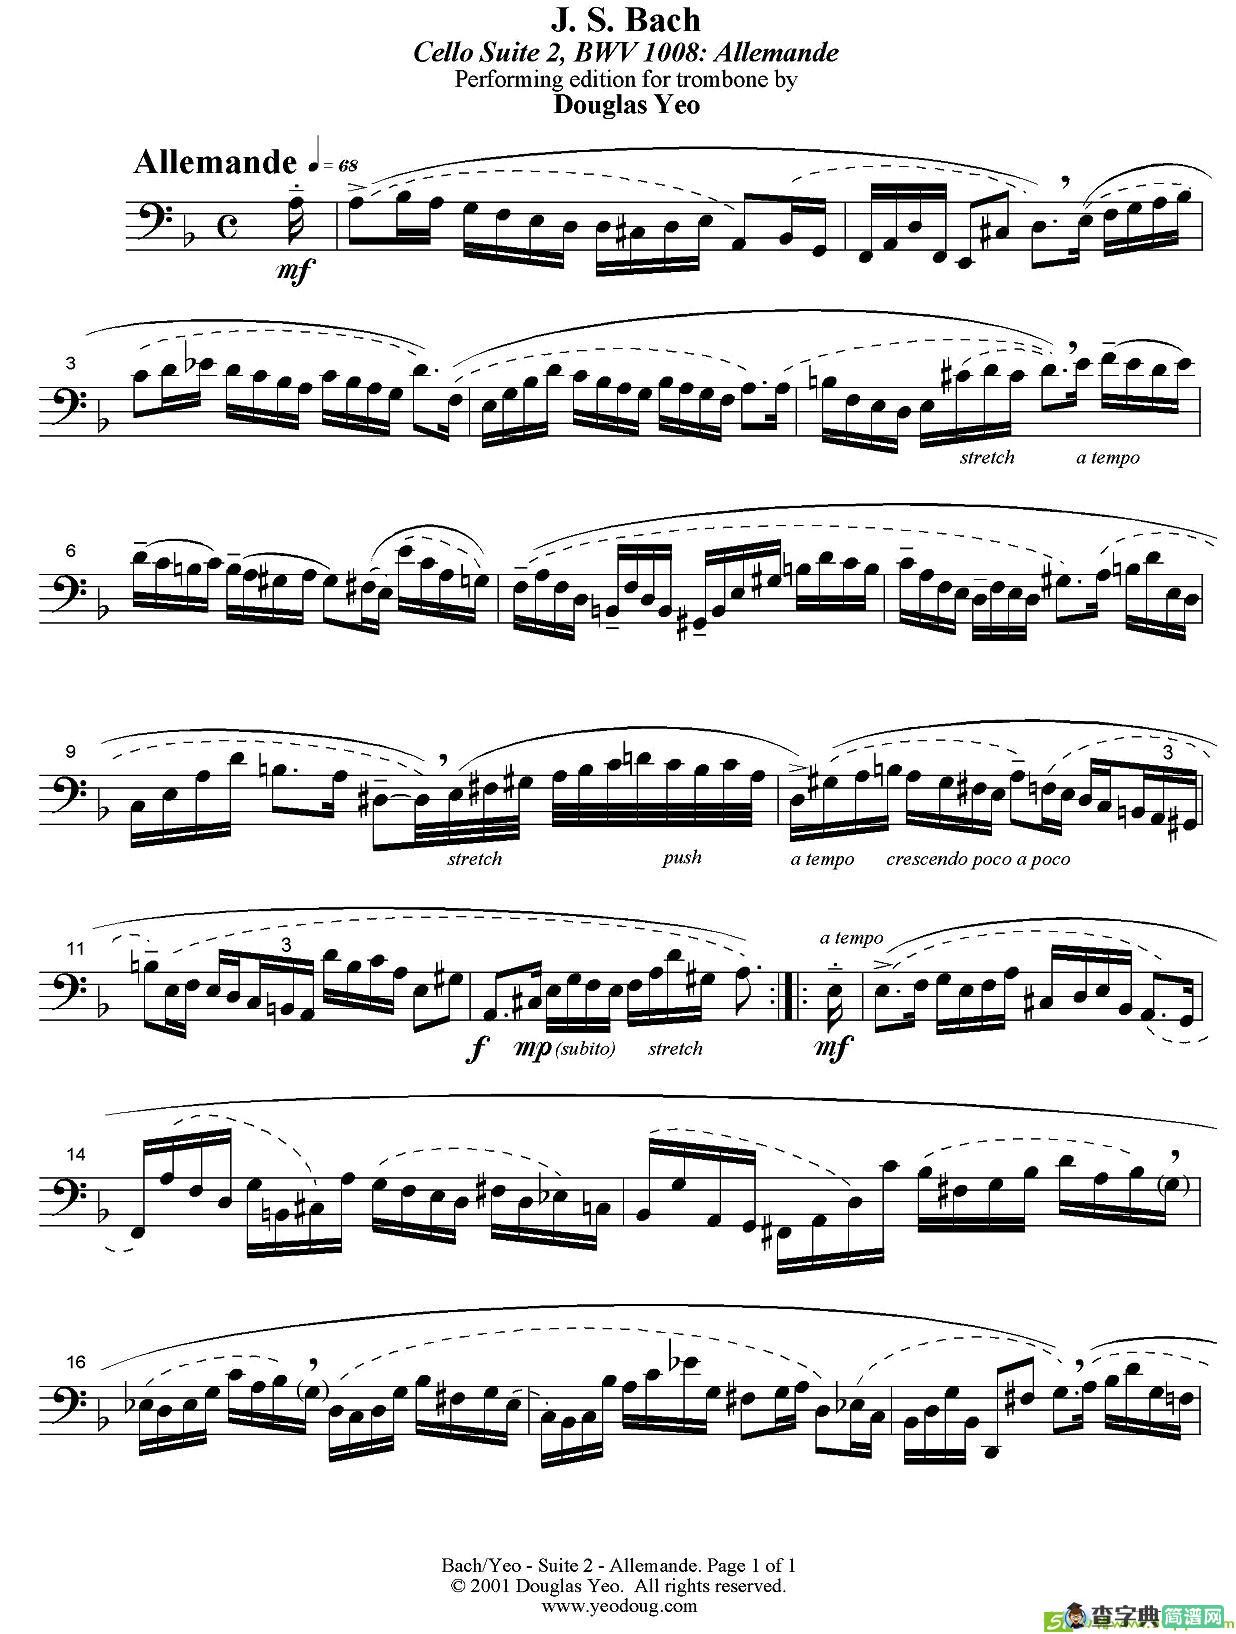 Douglas Yeo - Allemande铜管谱(J·S·巴赫作曲)